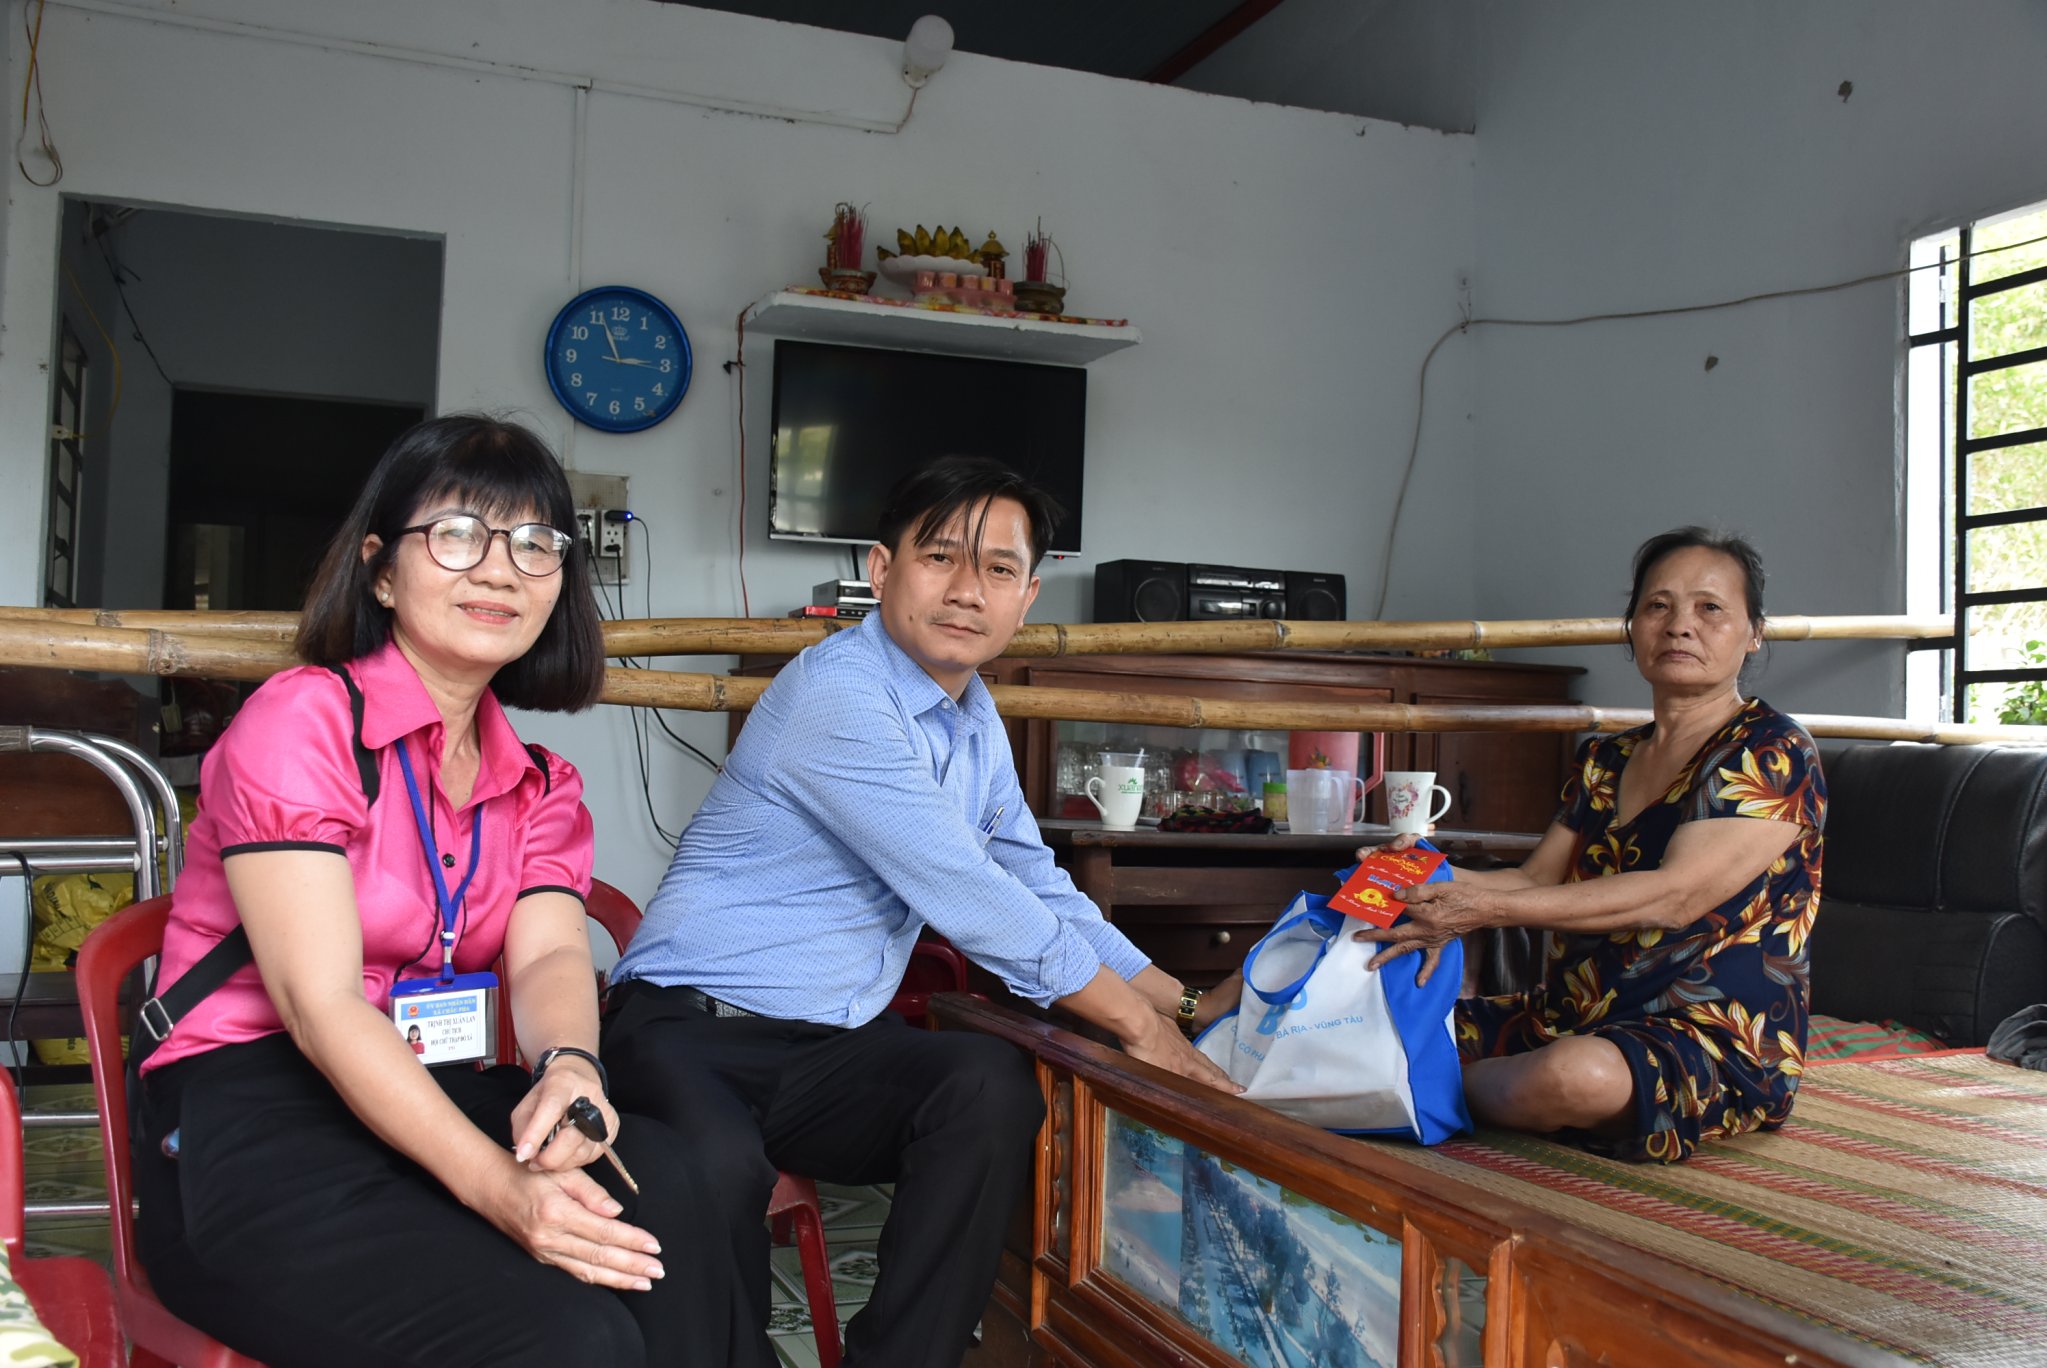 Bà Trịnh Thị Xuân Lan cùng đại diện Báo Bà Rịa-Vũng Tàu thăm, tặng quà một trường hợp khó khăn được giới thiệu trong chuyên mục “Kết nối yêu thương” do Báo giới thiệu (Ảnh chụp tháng 1/2021).